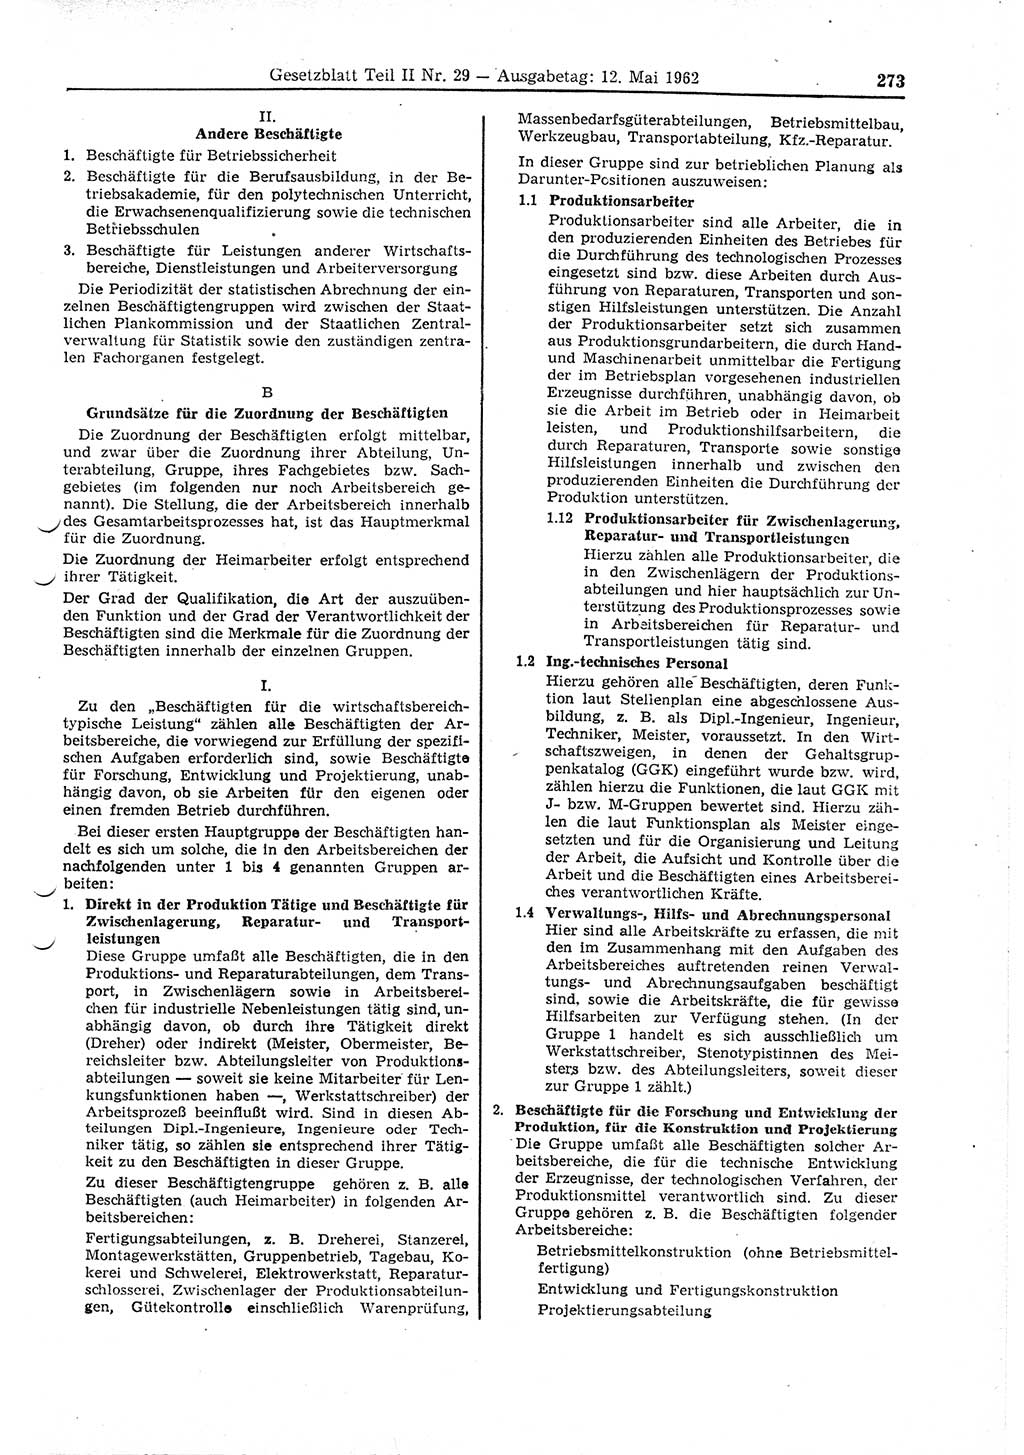 Gesetzblatt (GBl.) der Deutschen Demokratischen Republik (DDR) Teil ⅠⅠ 1962, Seite 273 (GBl. DDR ⅠⅠ 1962, S. 273)